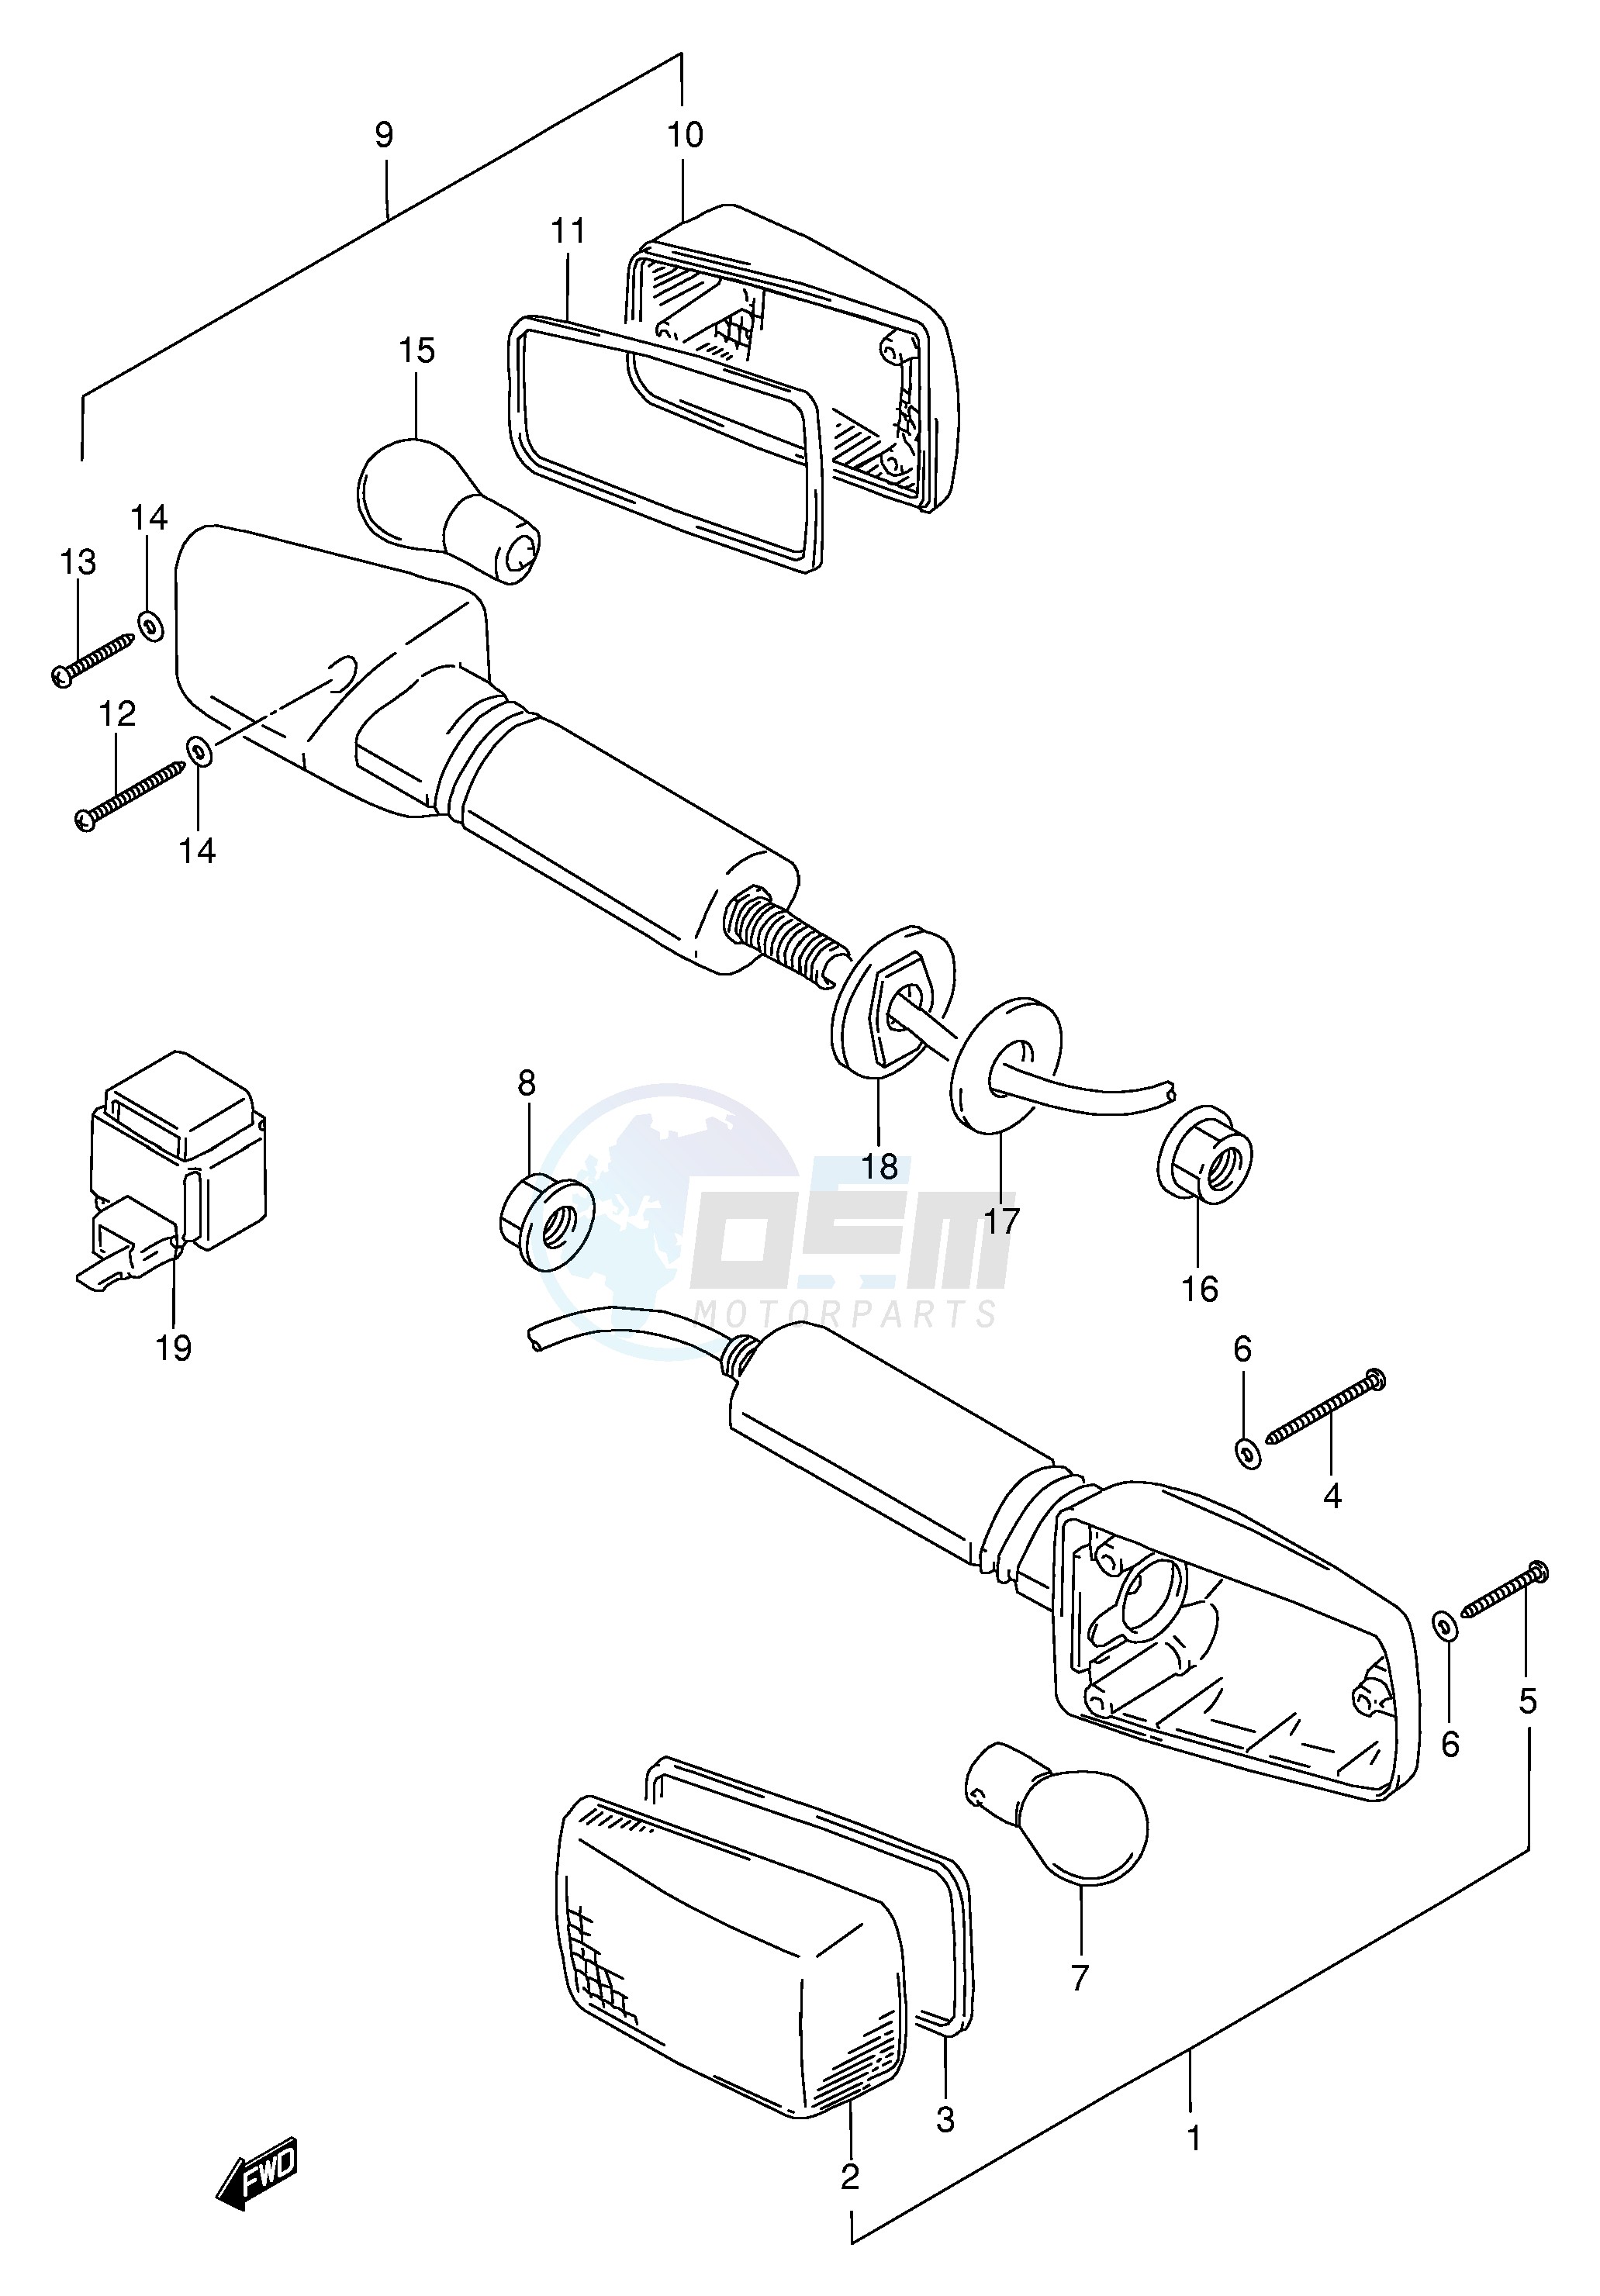 TURNSIGNAL LAMP (MODEL T V W) blueprint